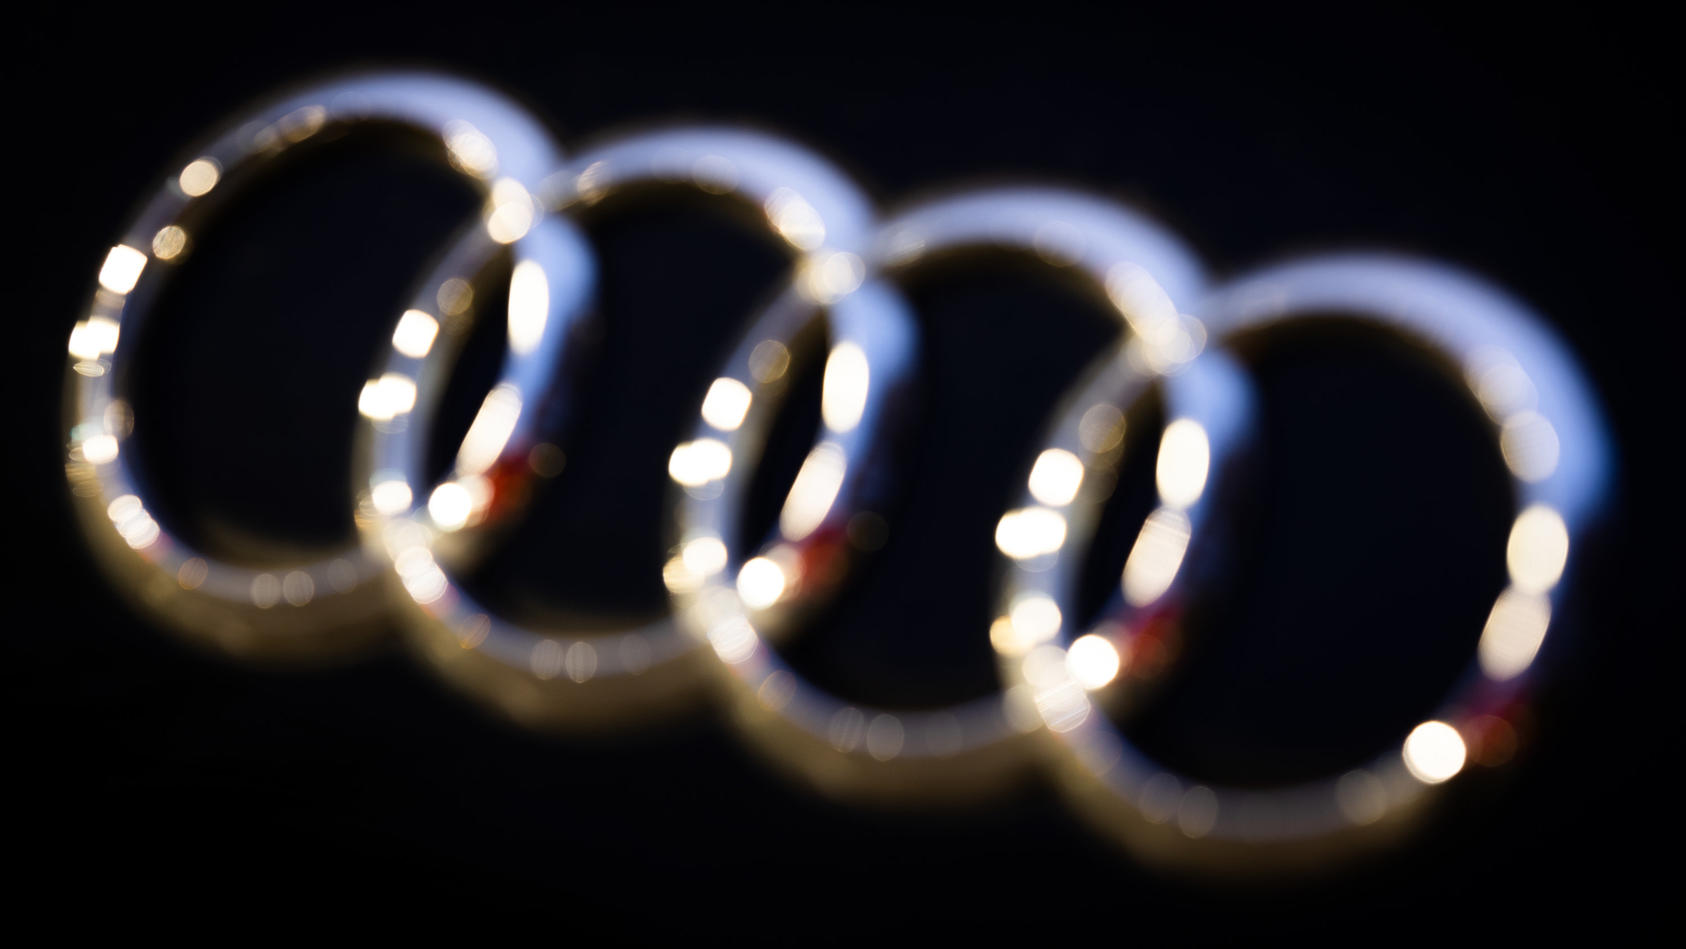 24.11.2021, Niedersachsen, Hannover: Das Logo vom Automobilhersteller Audi ist am Abend  an einem Fahrzeug zu sehen. Der Bundesgerichtshof (BGH) verhandelt am 25.11.2021 im Dieselskandal zu möglichen Schadenersatzansprüchen gegen die VW-Tochter Audi.